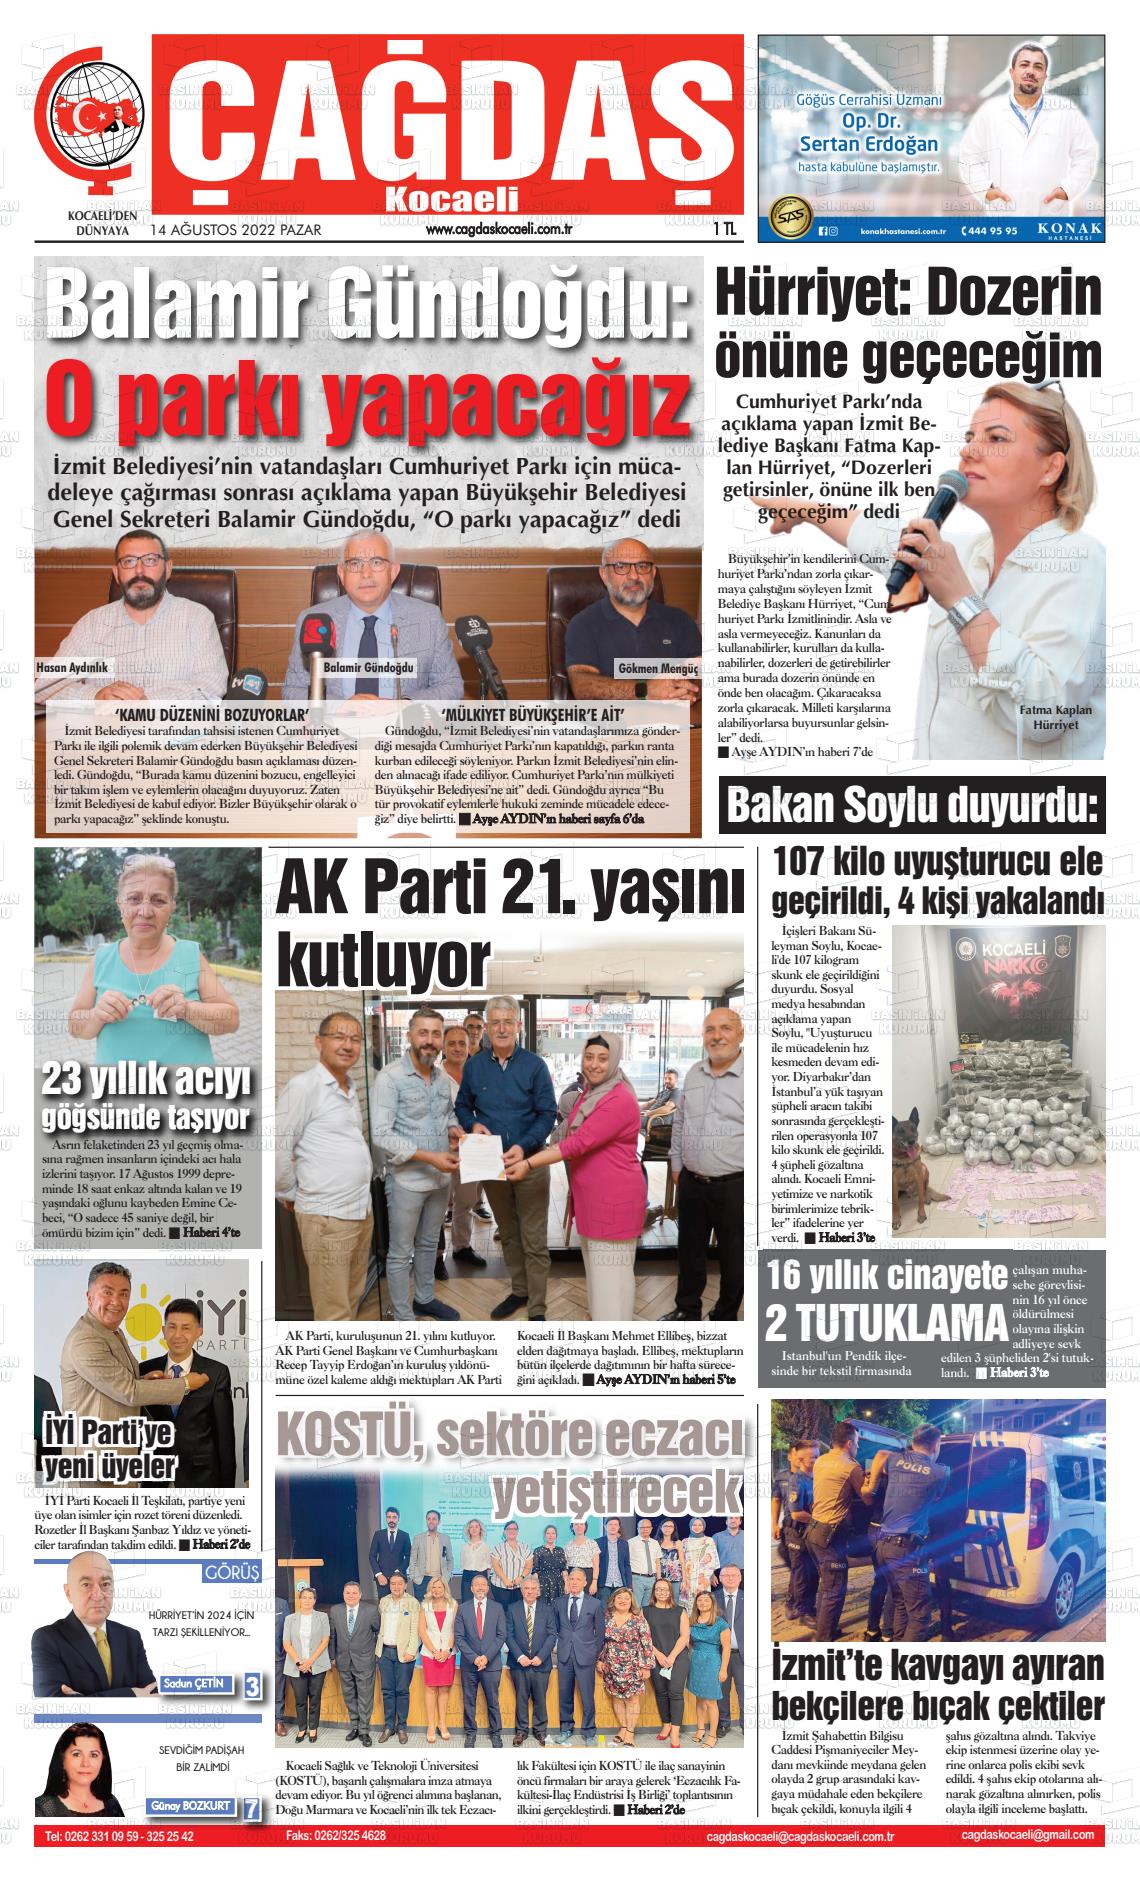 14 Ağustos 2022 Çağdaş Kocaeli Gazete Manşeti